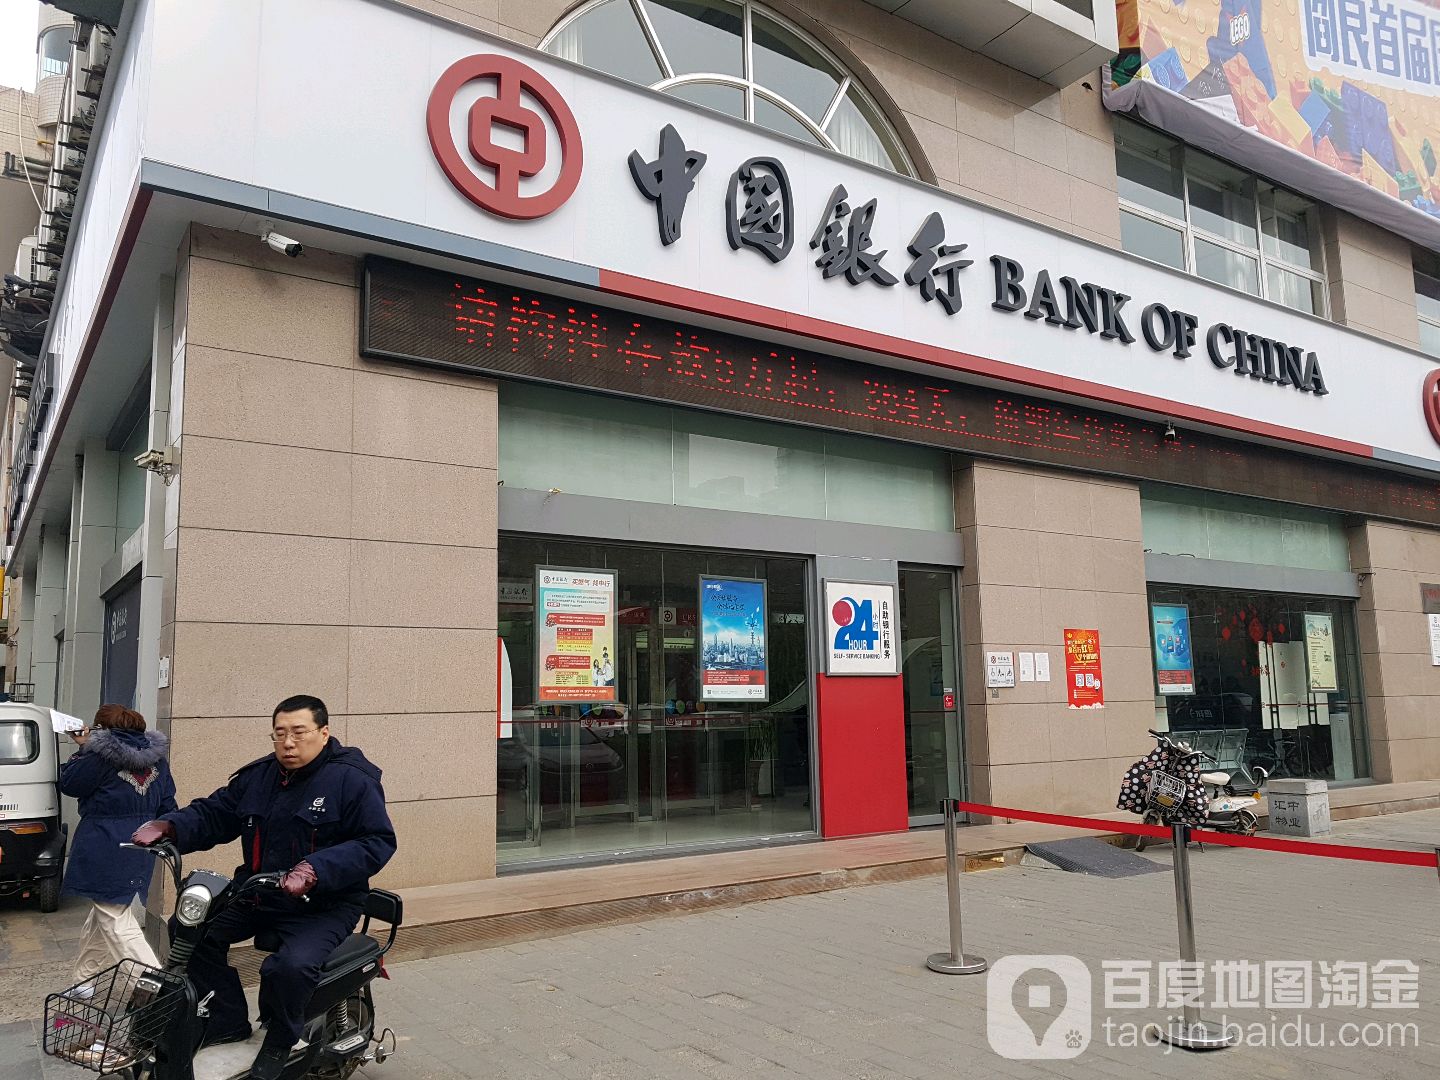 中國銀行24小時自助銀行(西安閻良航空高技術產業基地支行)